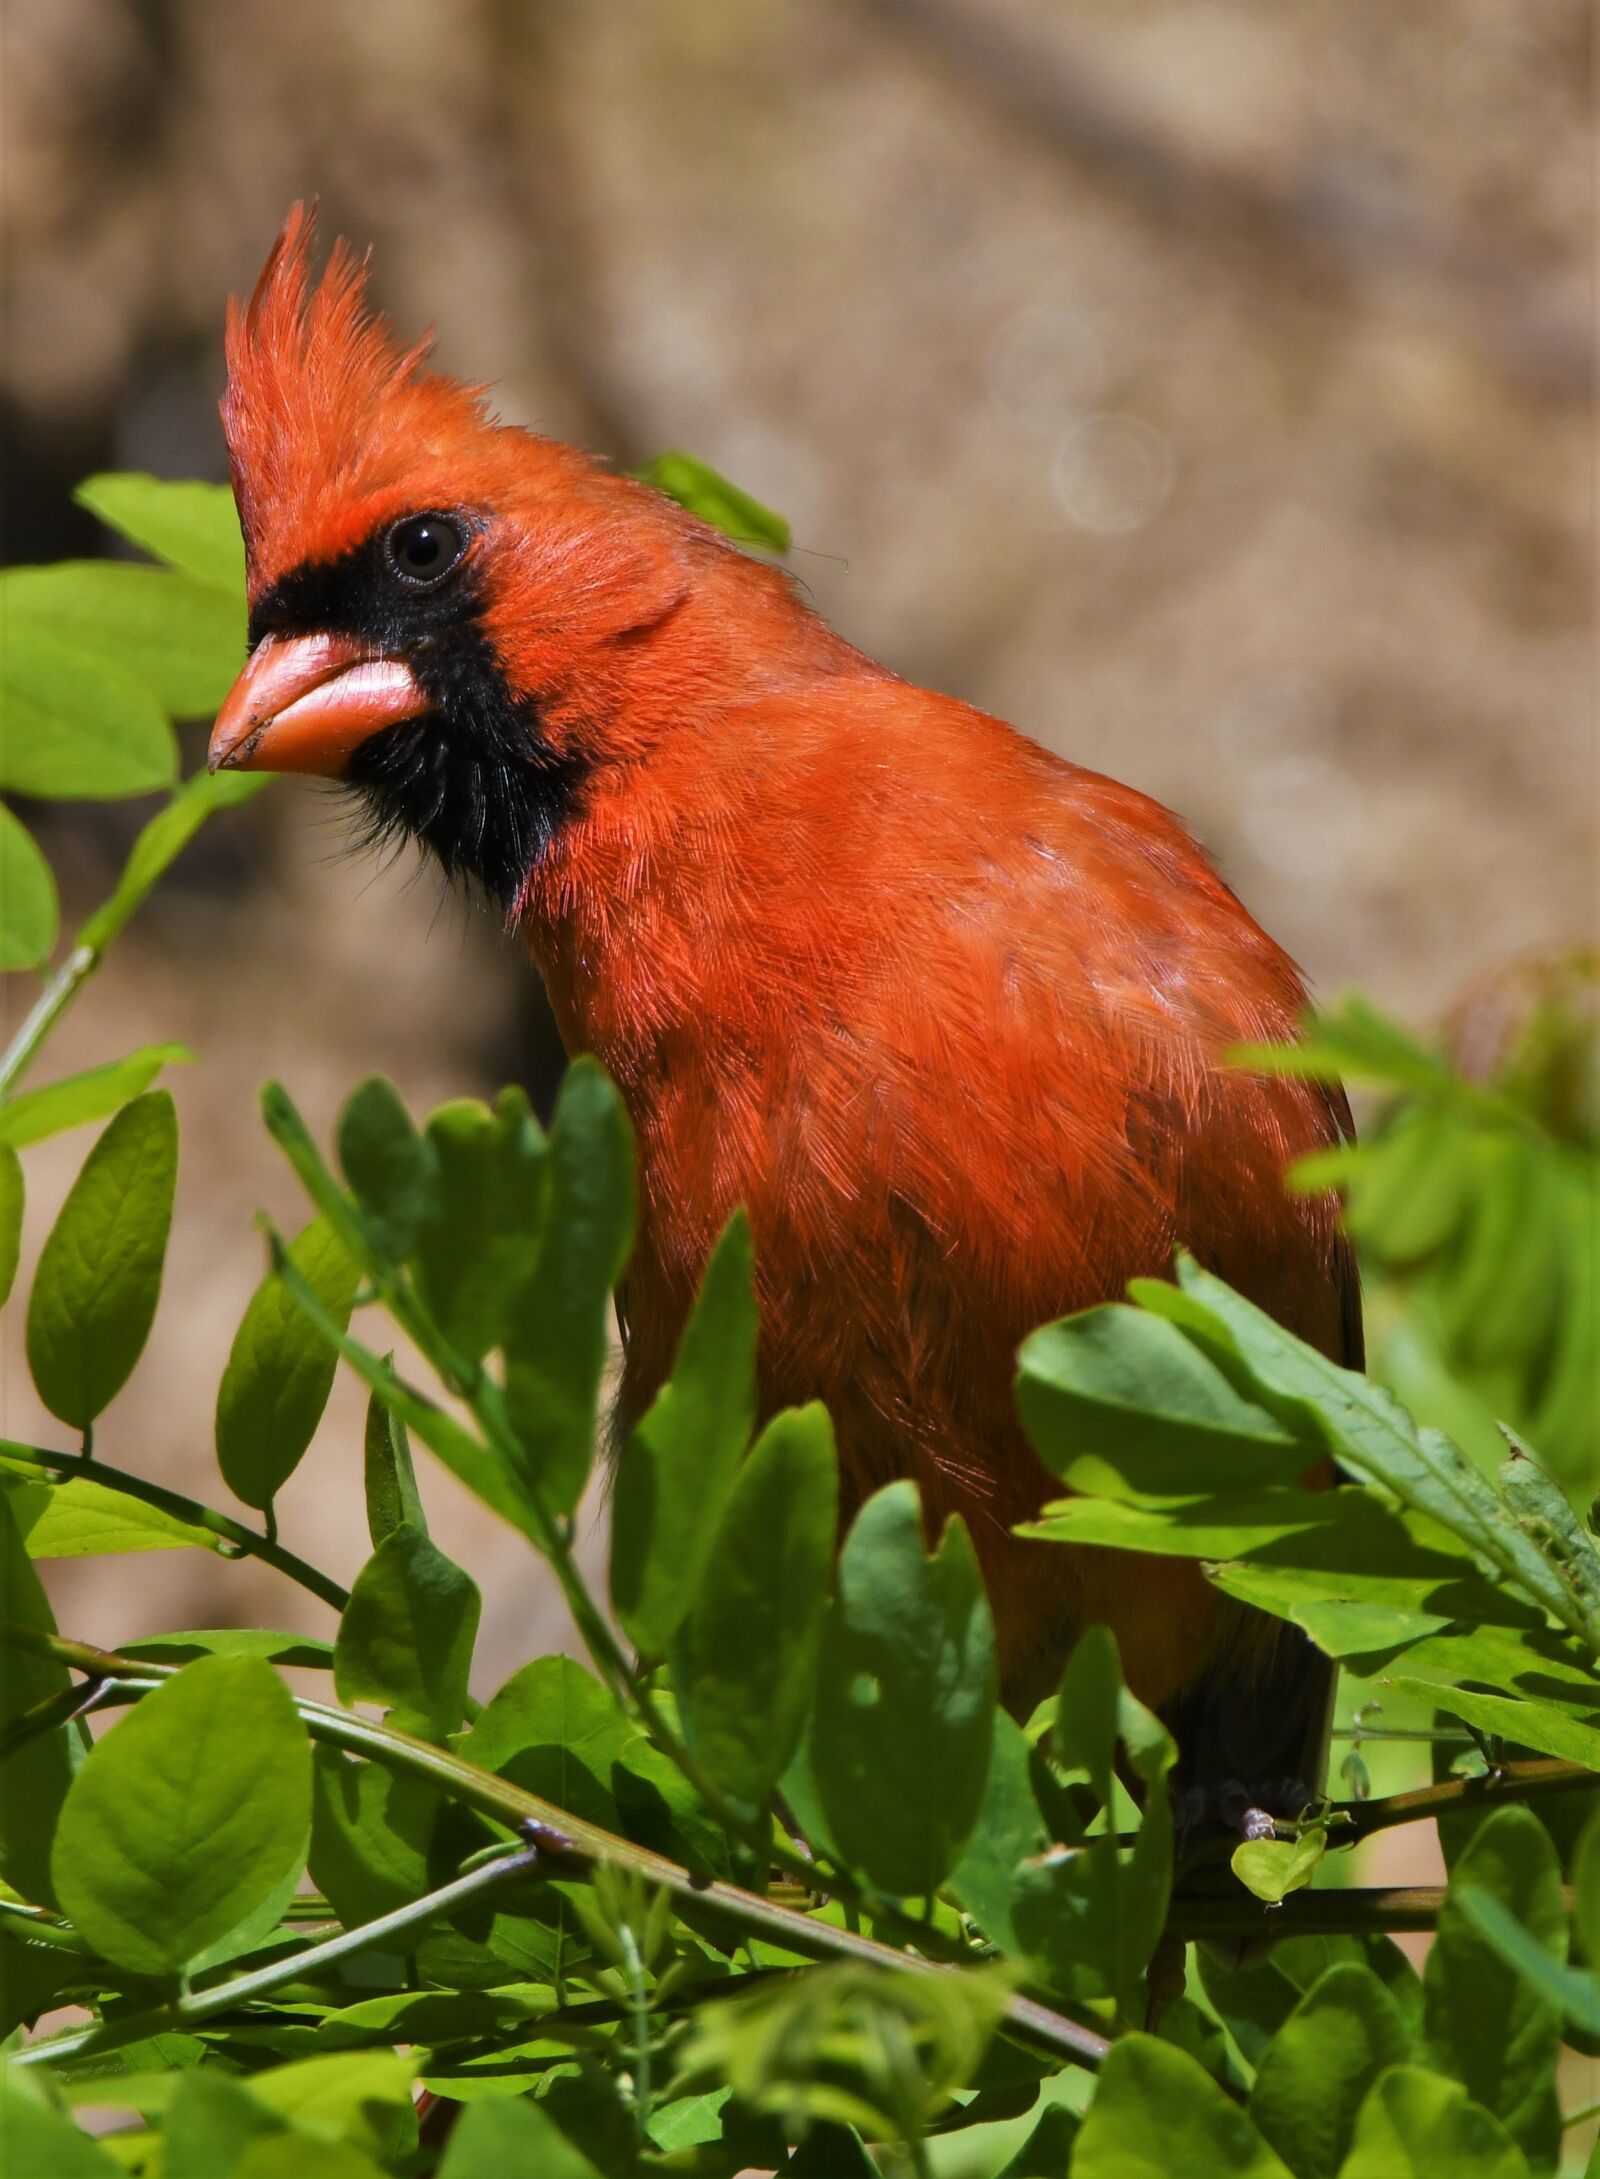 Nikon D850 sample photo. Bird, songbird, redbird photography